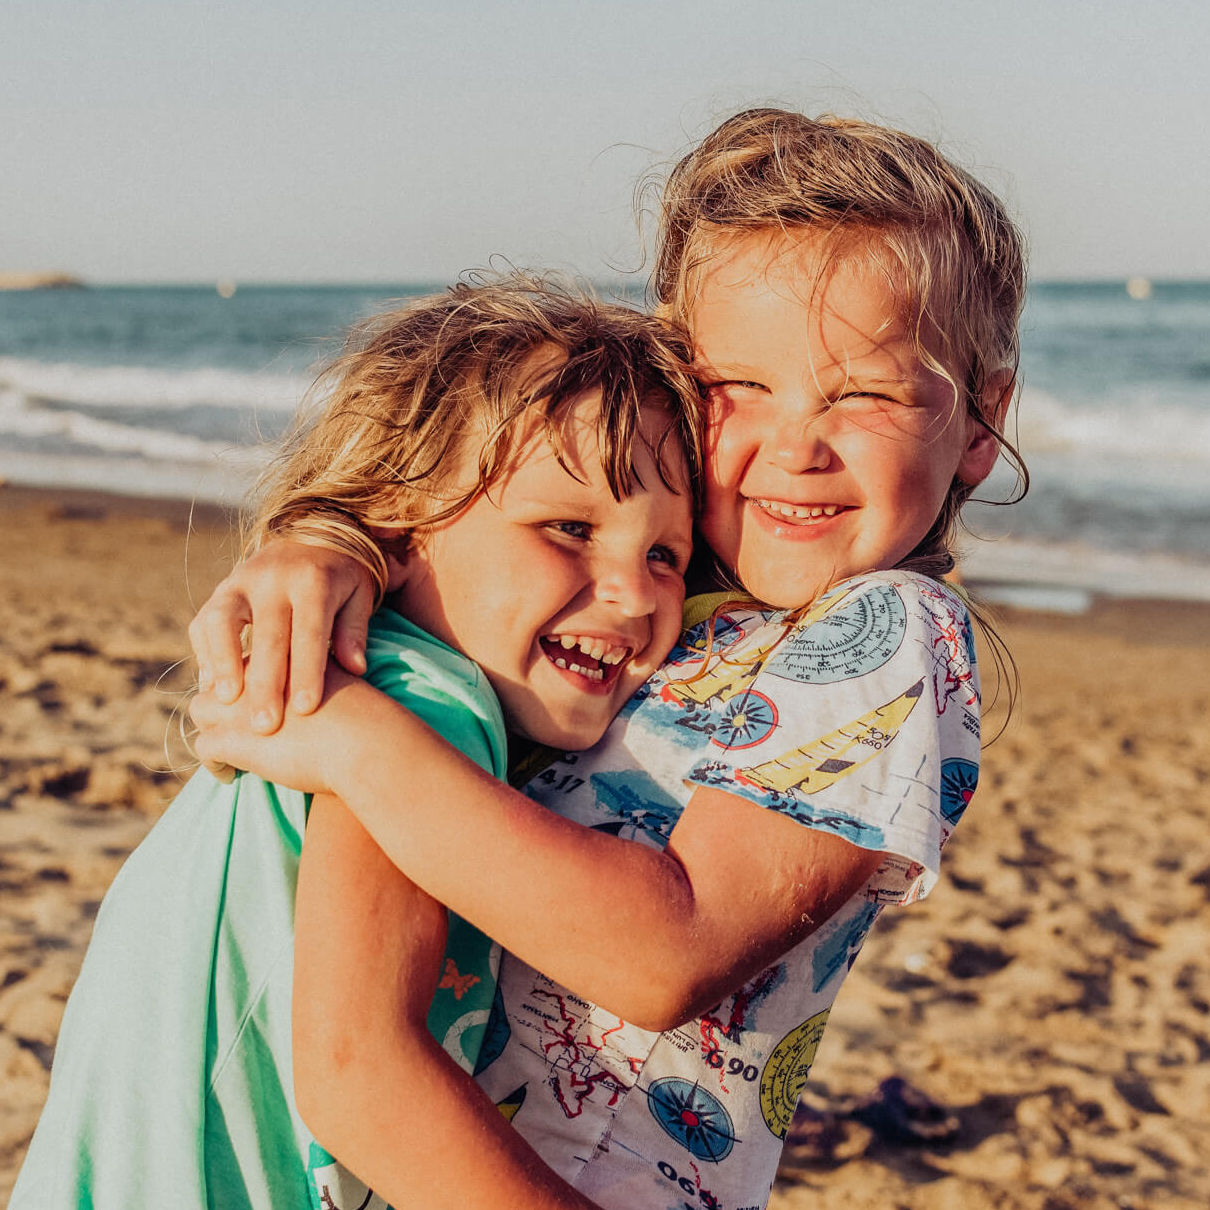 Zwei junge Mädchen am Strand liegen sich lachend in den Armen